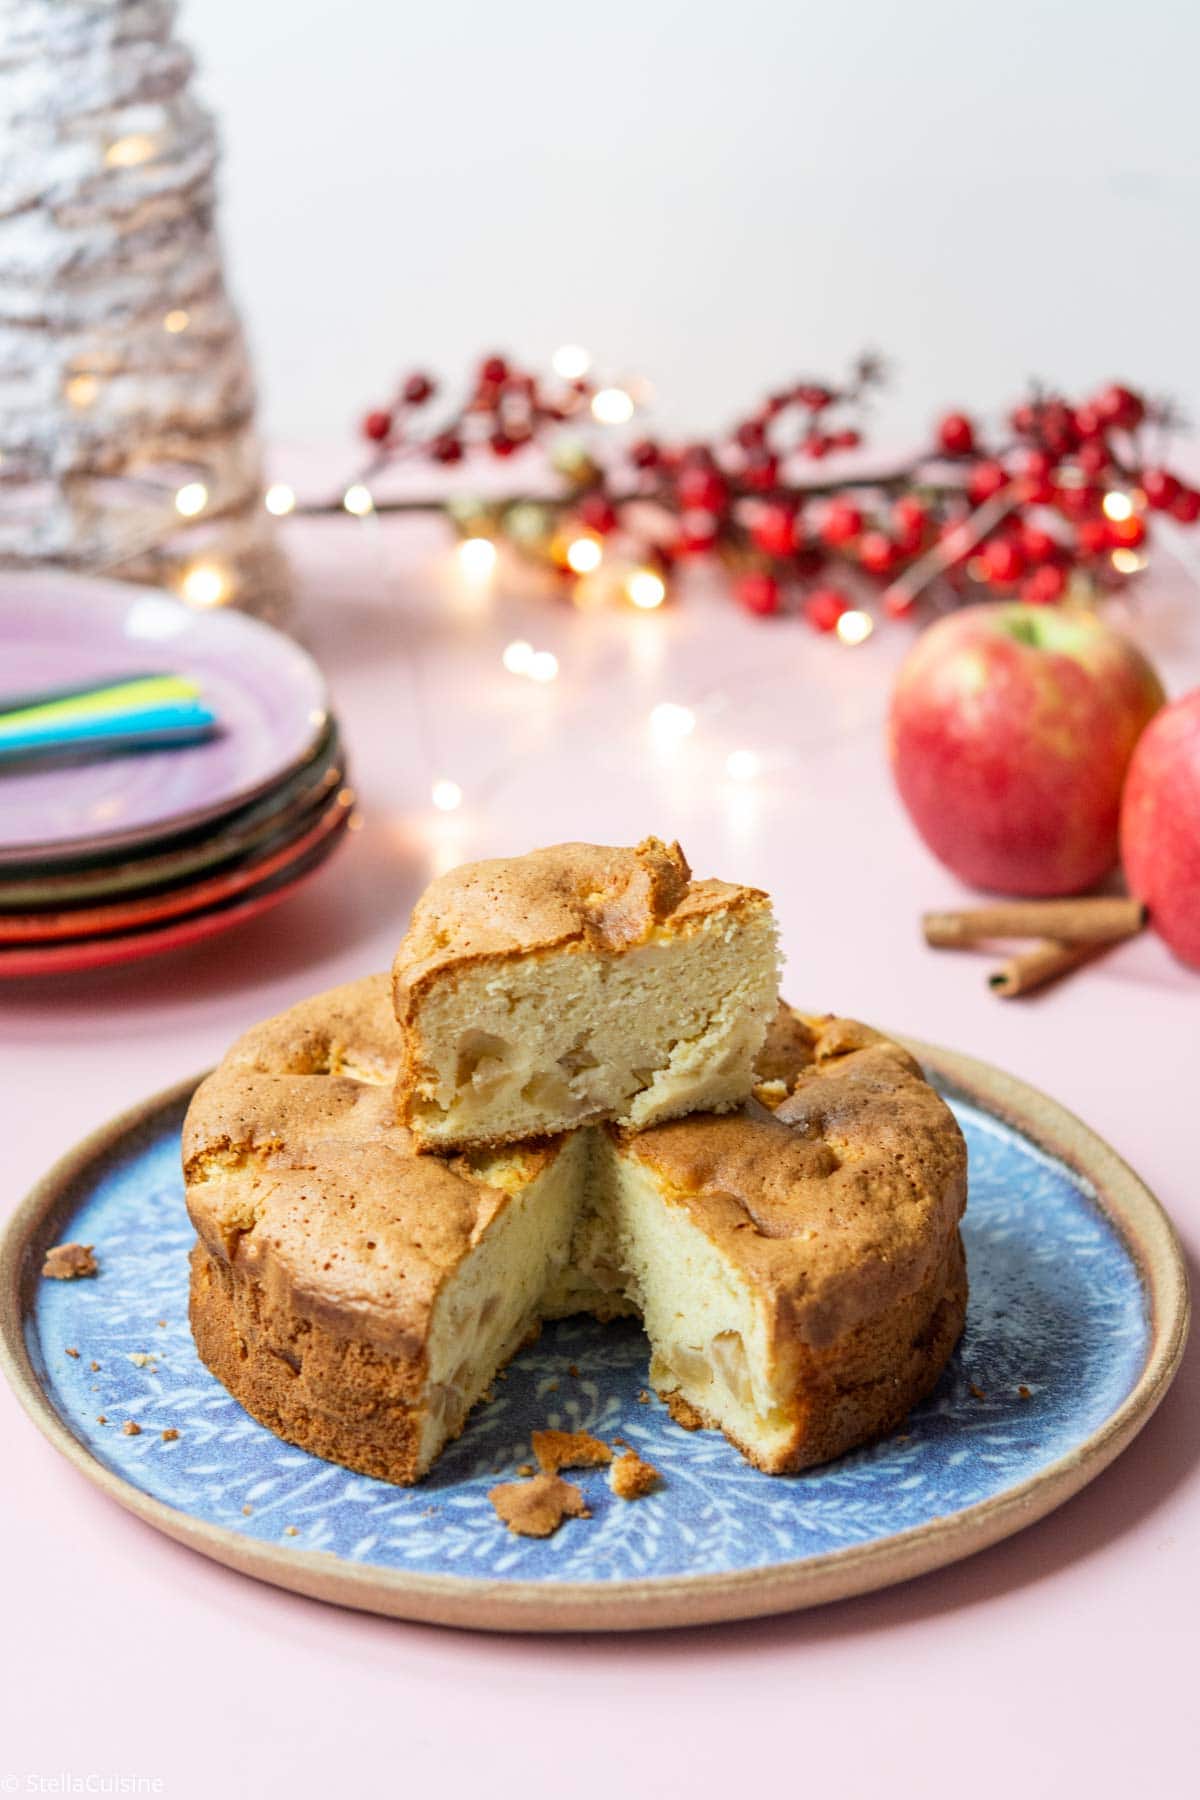 Recette de Noël végétarien : gâteau moelleux pommes et cannelle